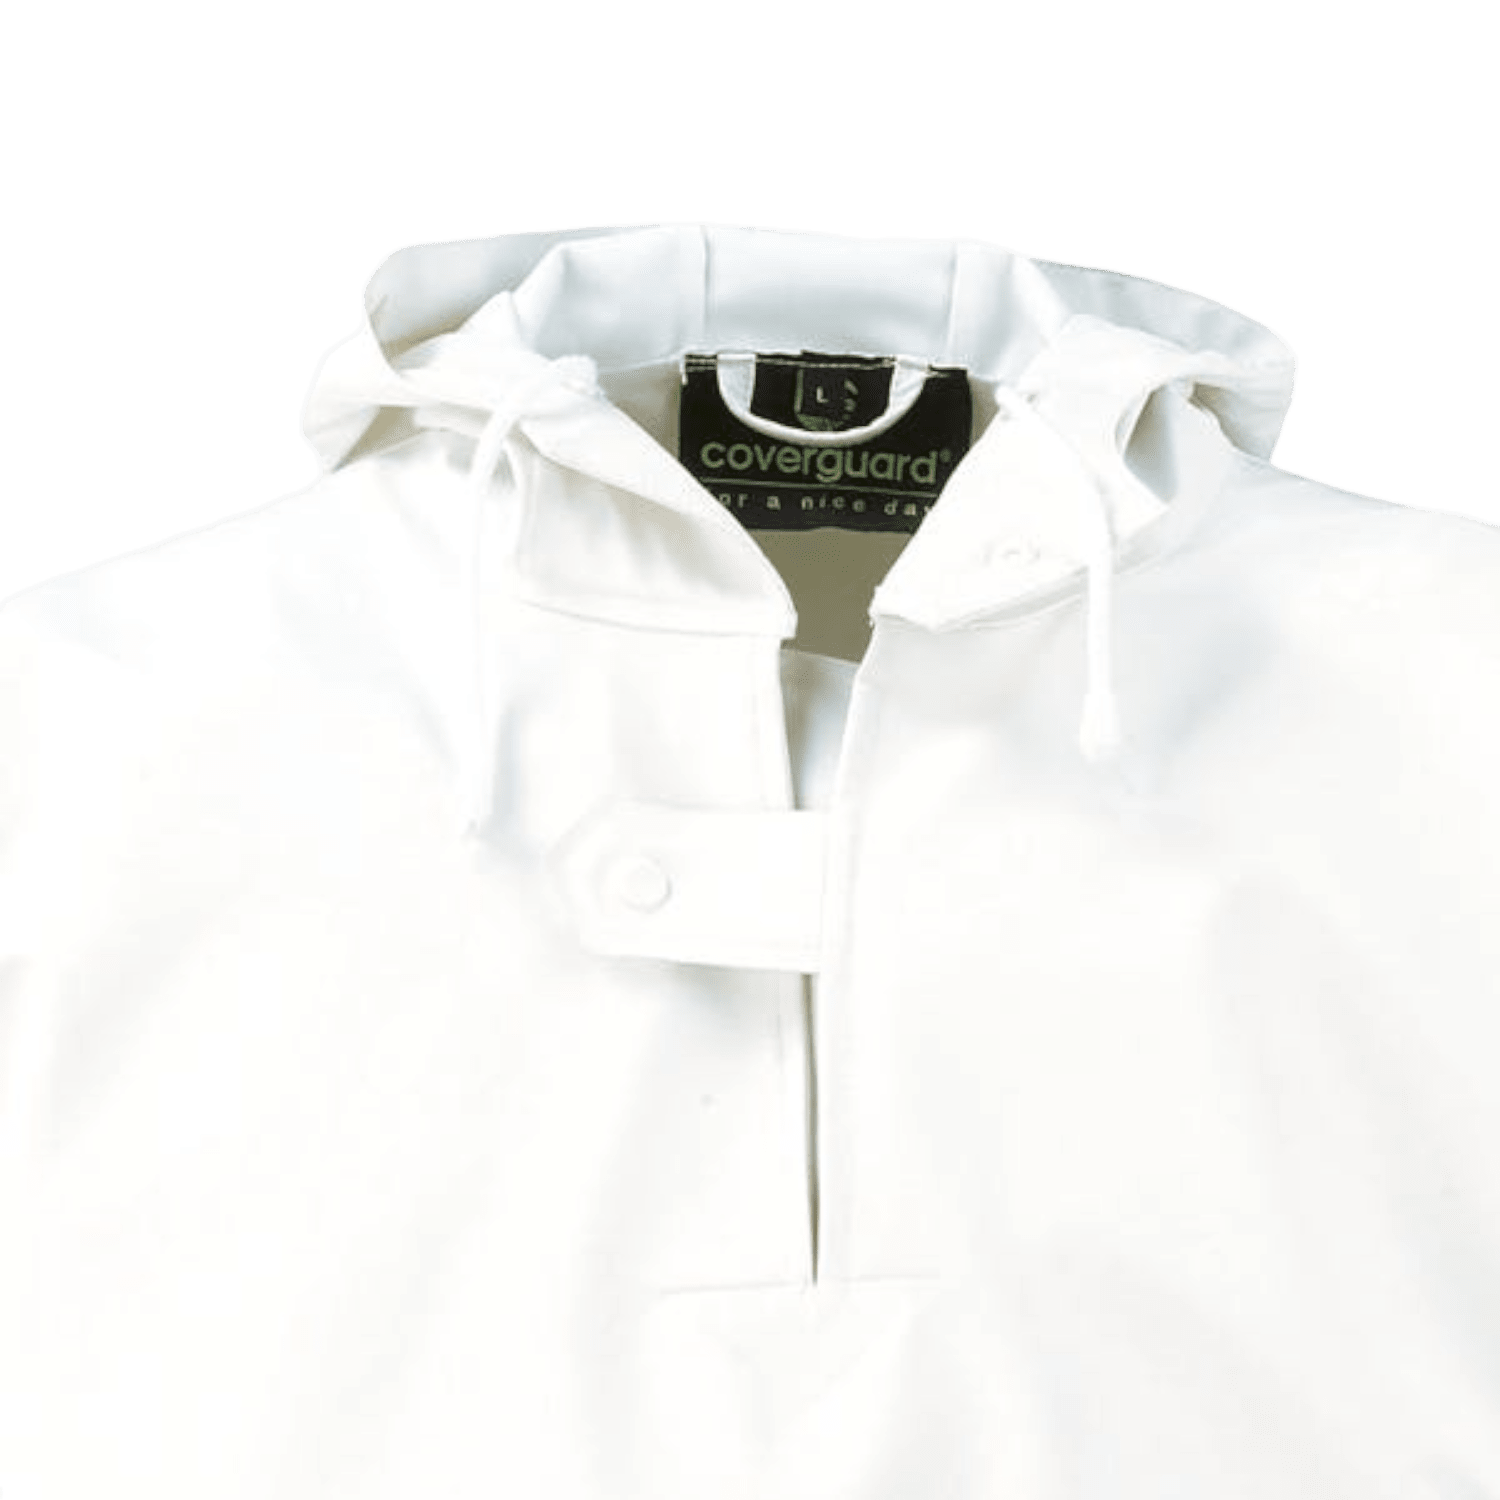 Veste Lorient polyester/polyuréthane imperméable Coverguard blanc taille XXL photo du produit Back View ZOOM